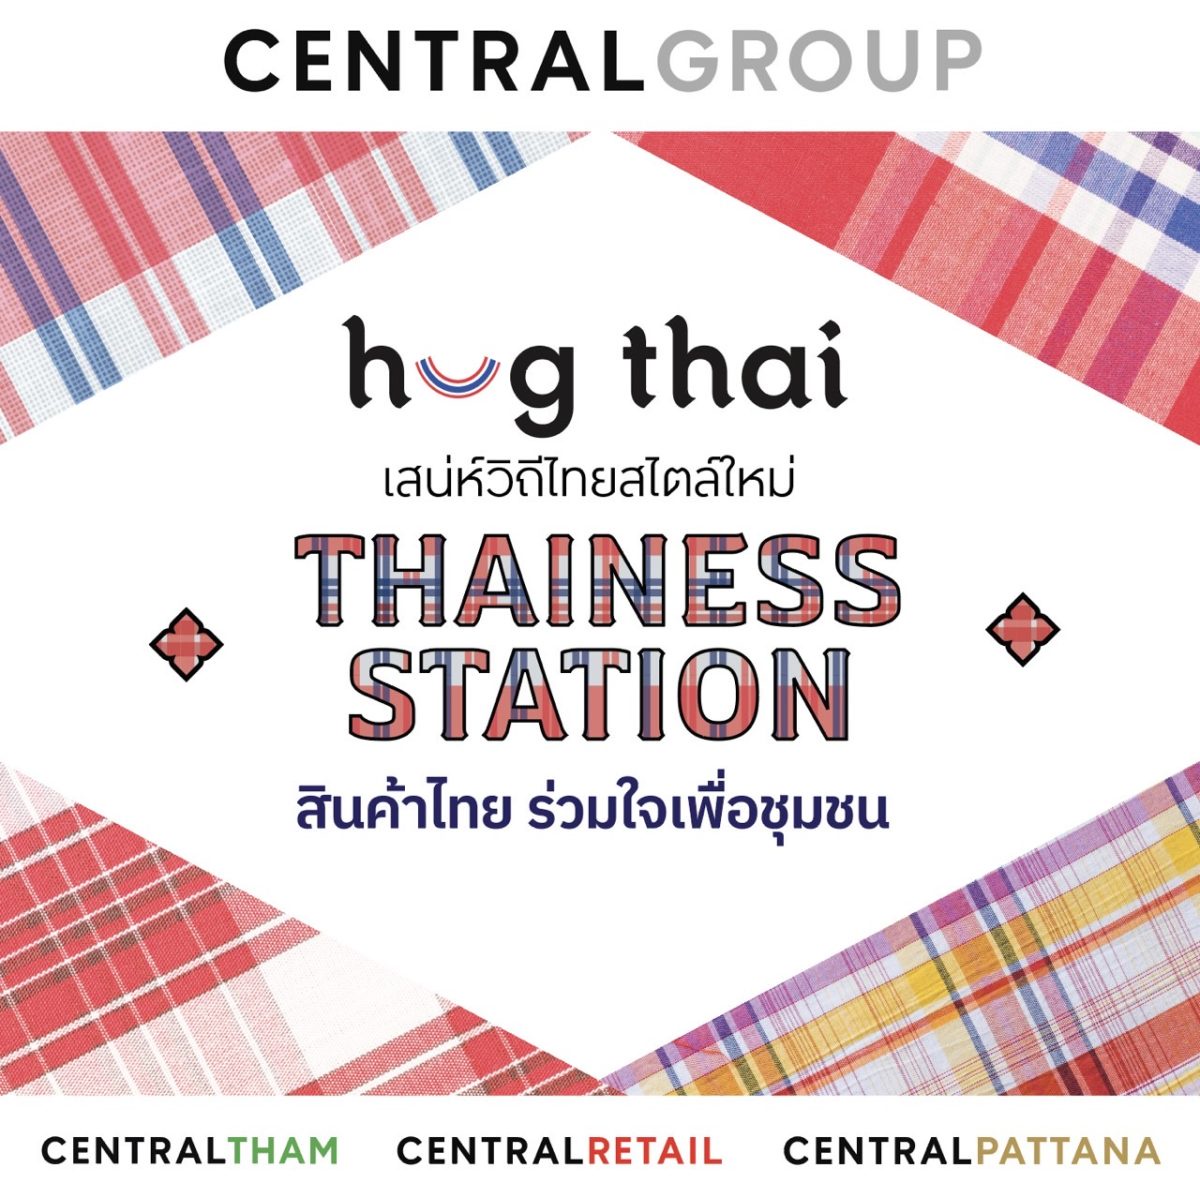 กลุ่มเซ็นทรัล และบริษัทในเครือ เปิดโครงการ ฮักไทย เสน่ห์วิถีไทยสไตล์ใหม่ Thainess Station สินค้าไทย ร่วมใจเพื่อชุมชน ผลักดันและยกระดับสินค้าท้องถิ่นไทยสู่ตลาดโลก